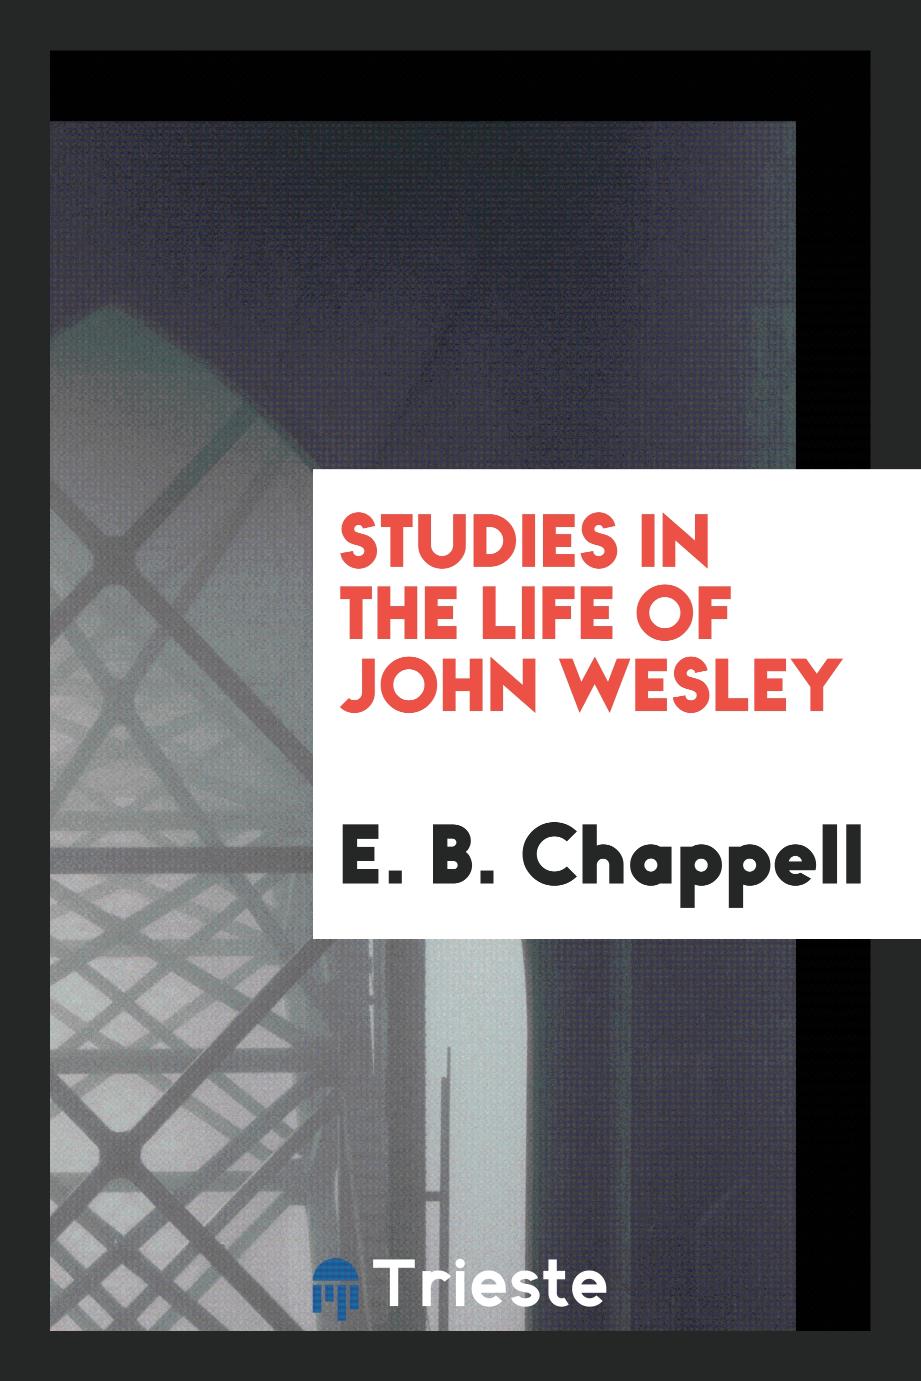 Studies in the life of John Wesley